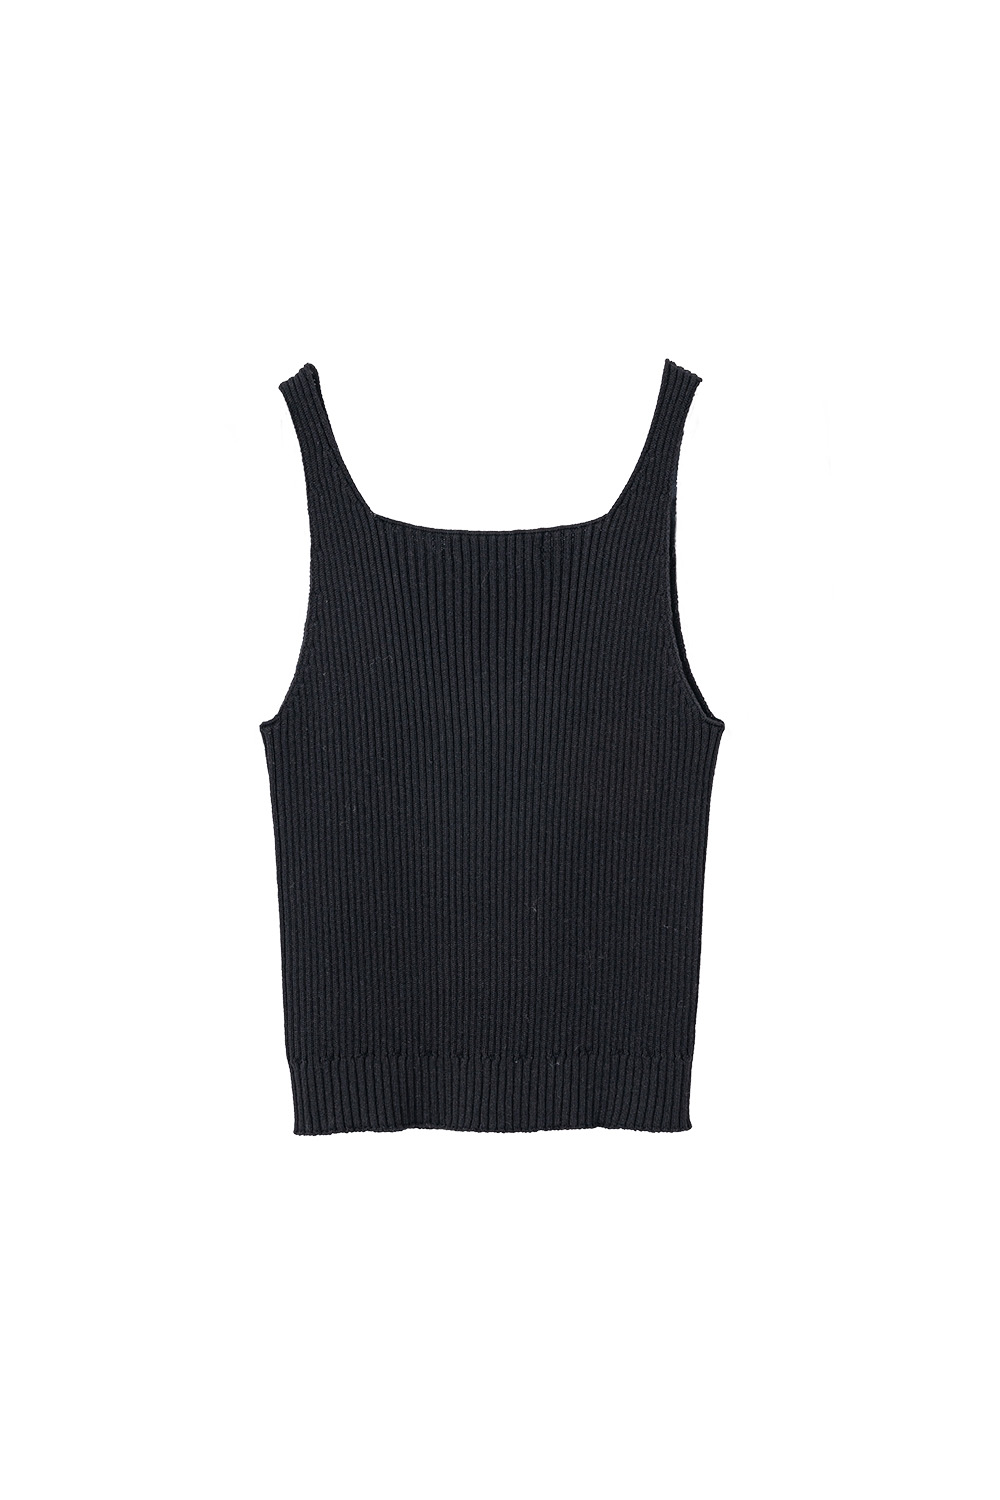 V-Neck Wholegarment Sleeveless Top (Black)